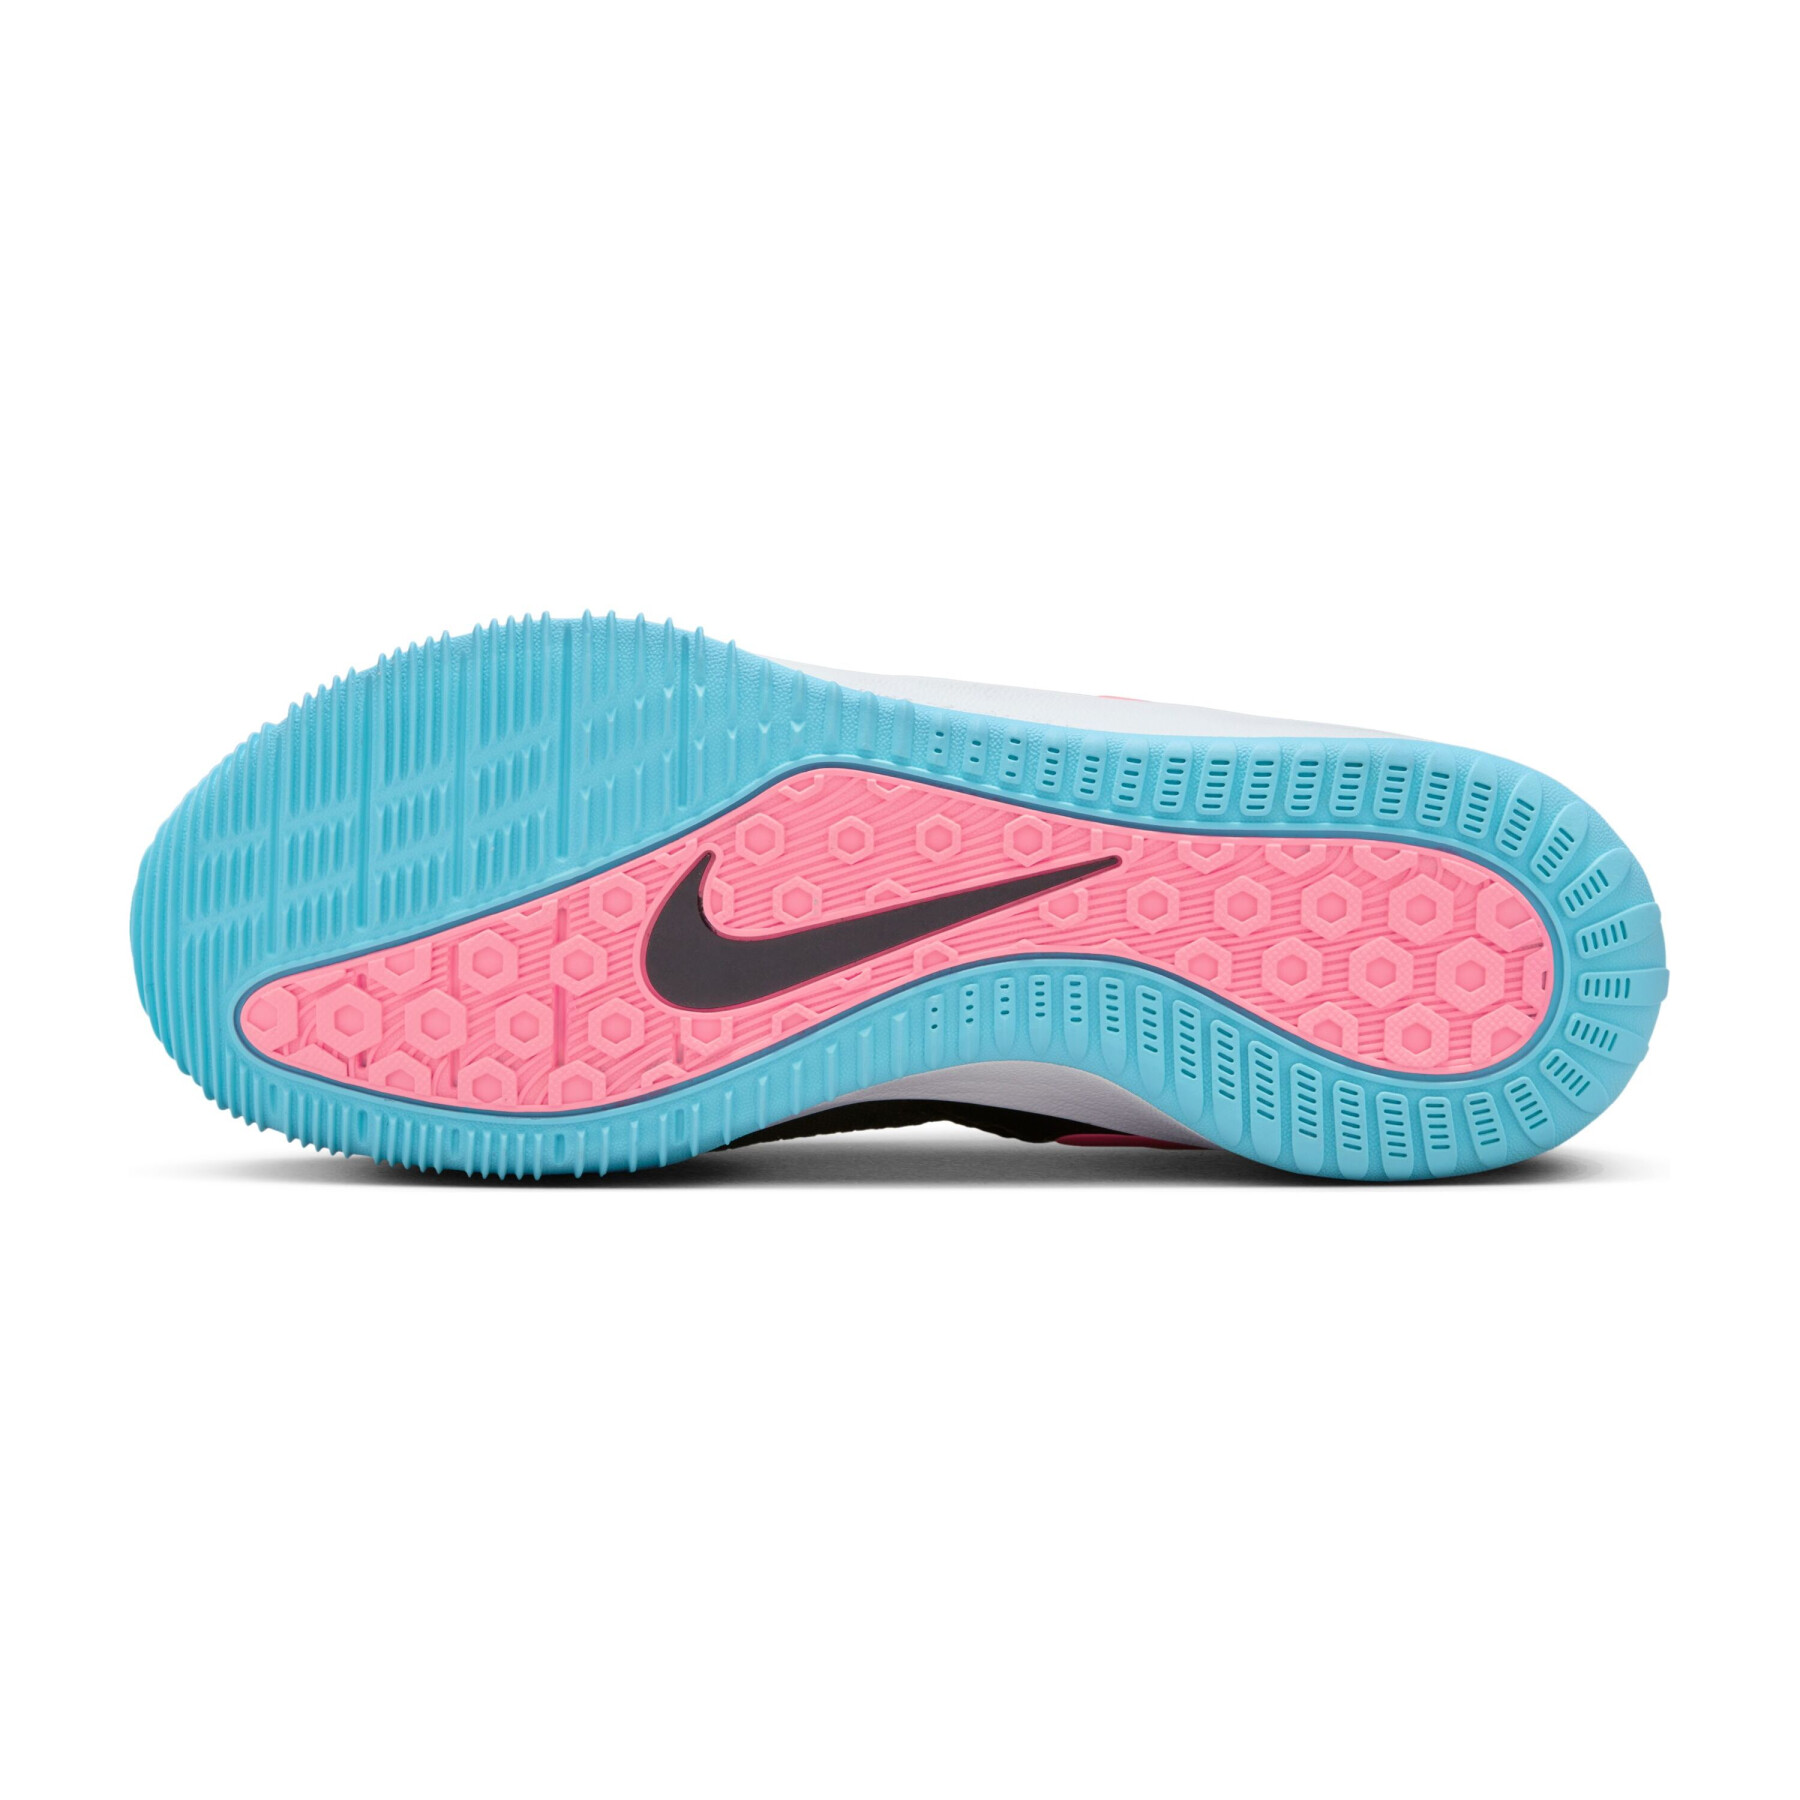 Scarpe Nike Zoom Hyperace 2 SE